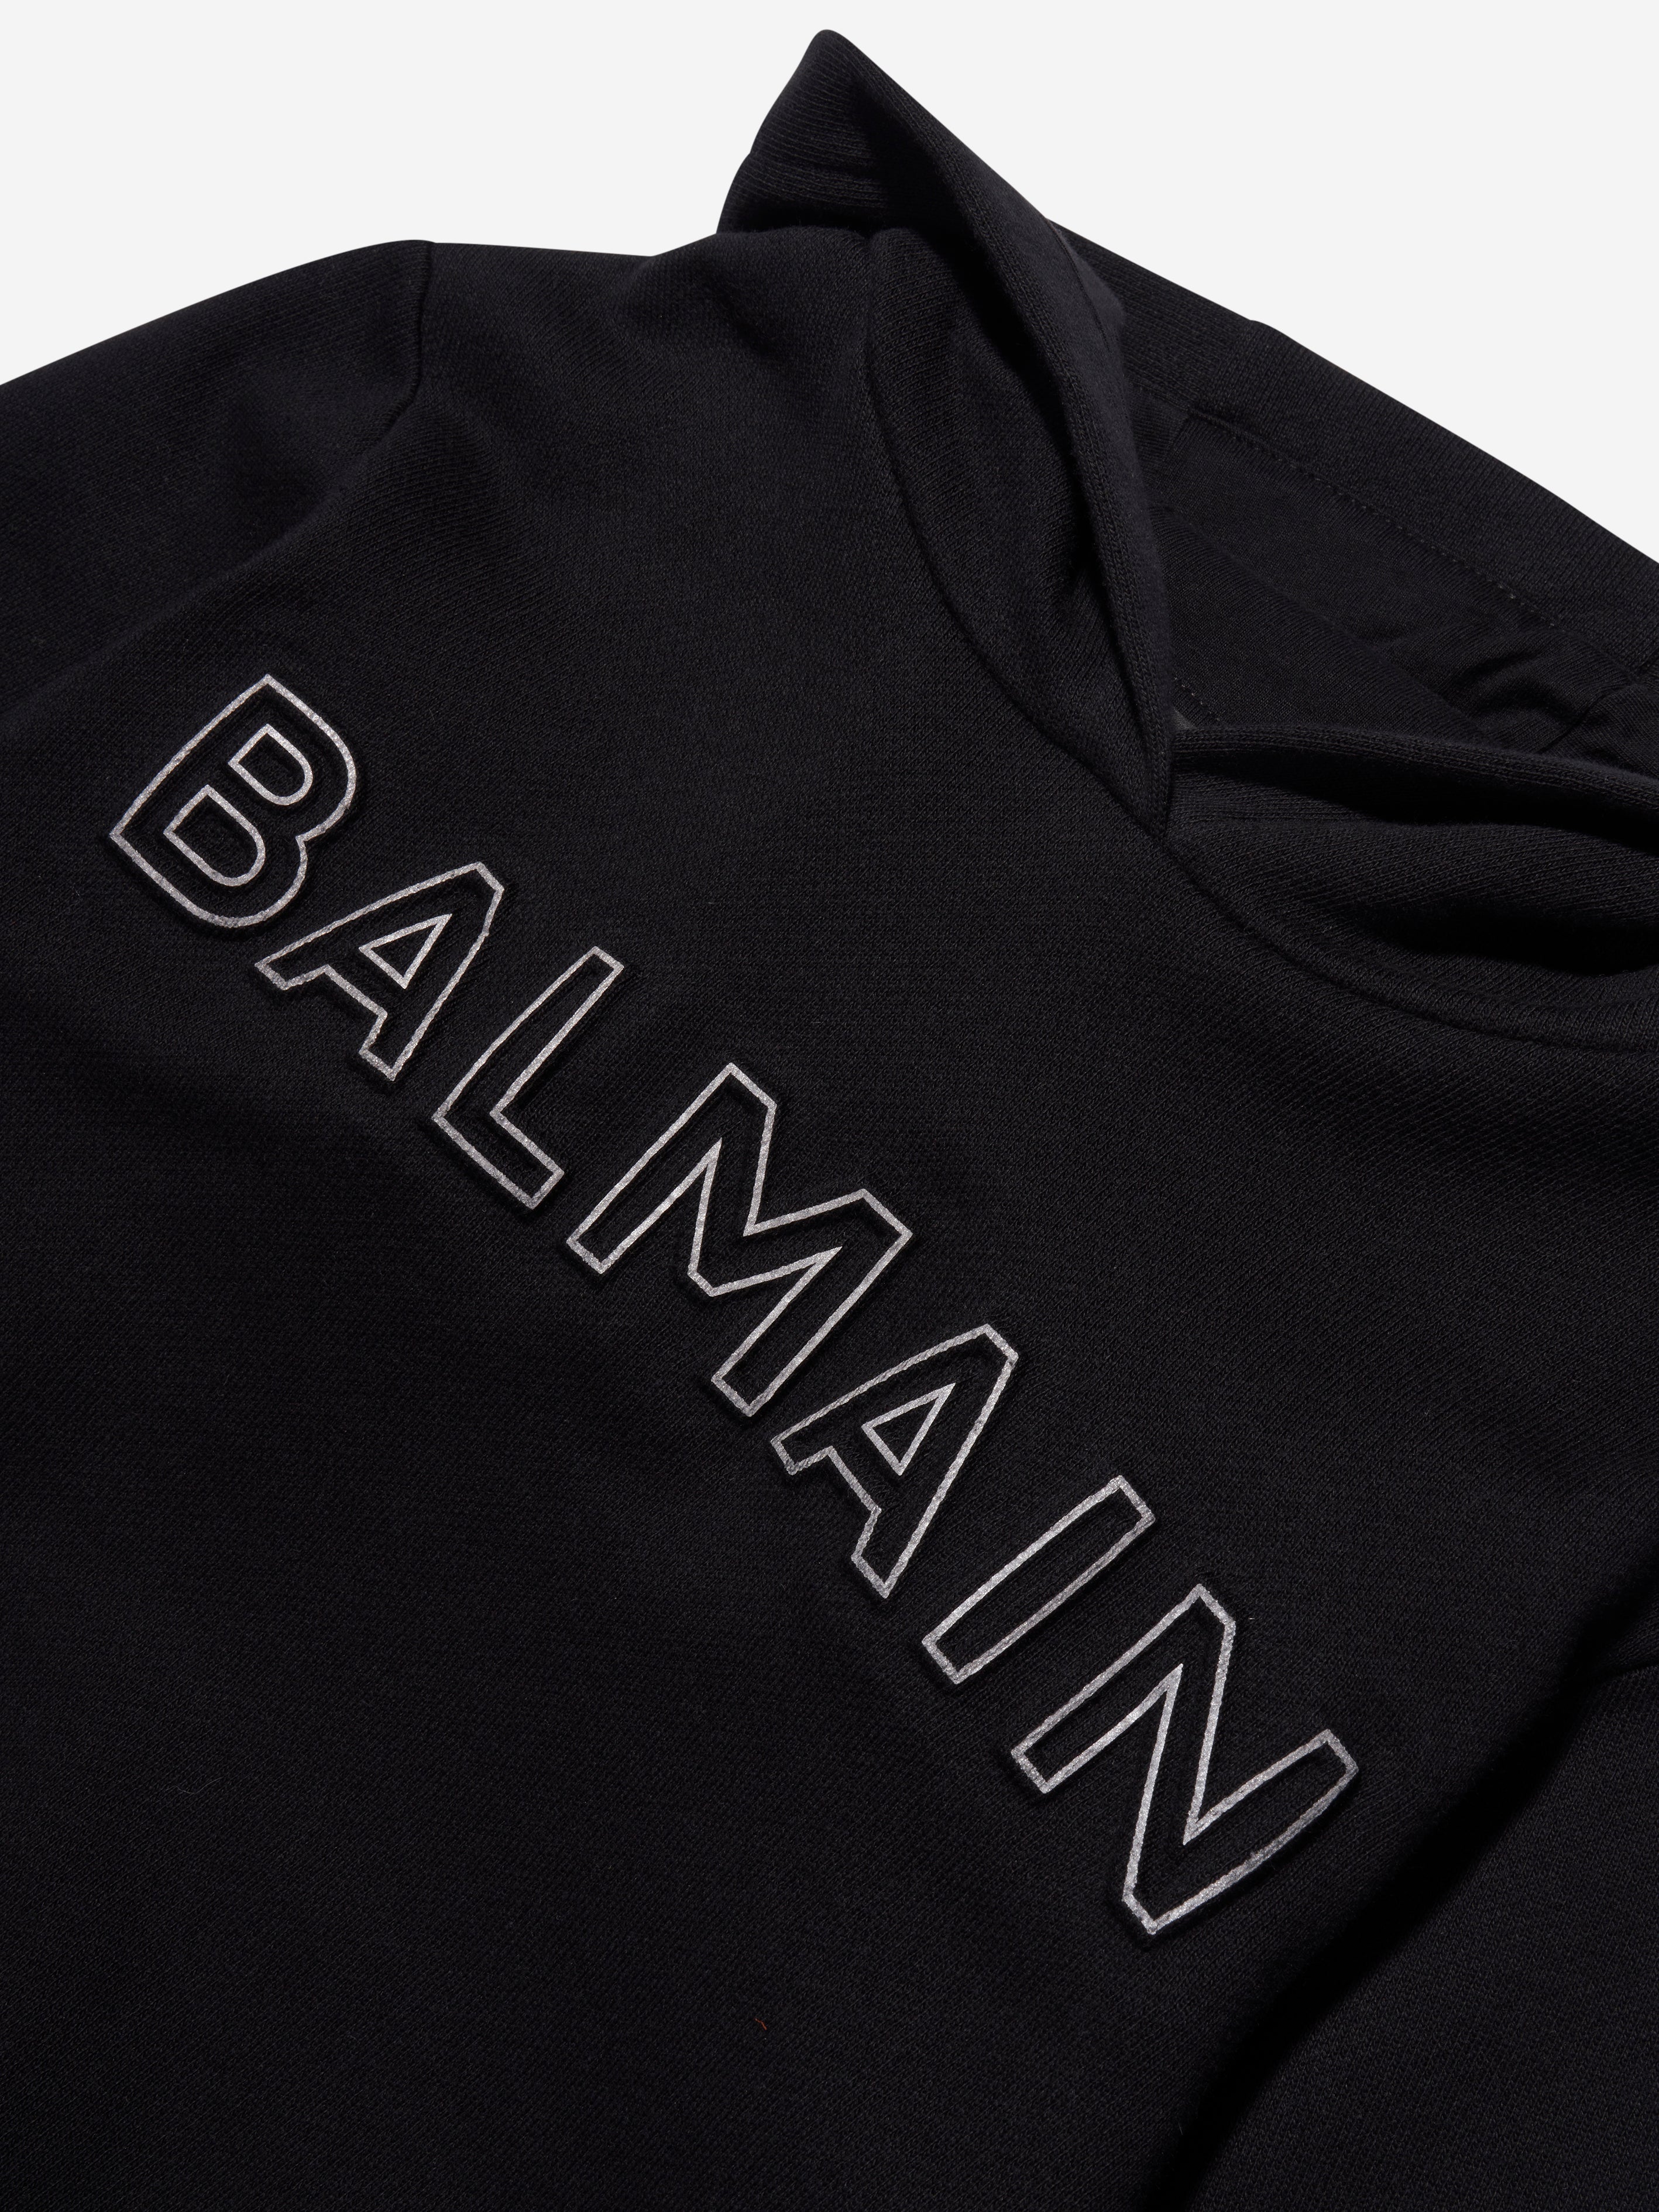 Balmain Kids cropped sequin-logo hoodie - Pink